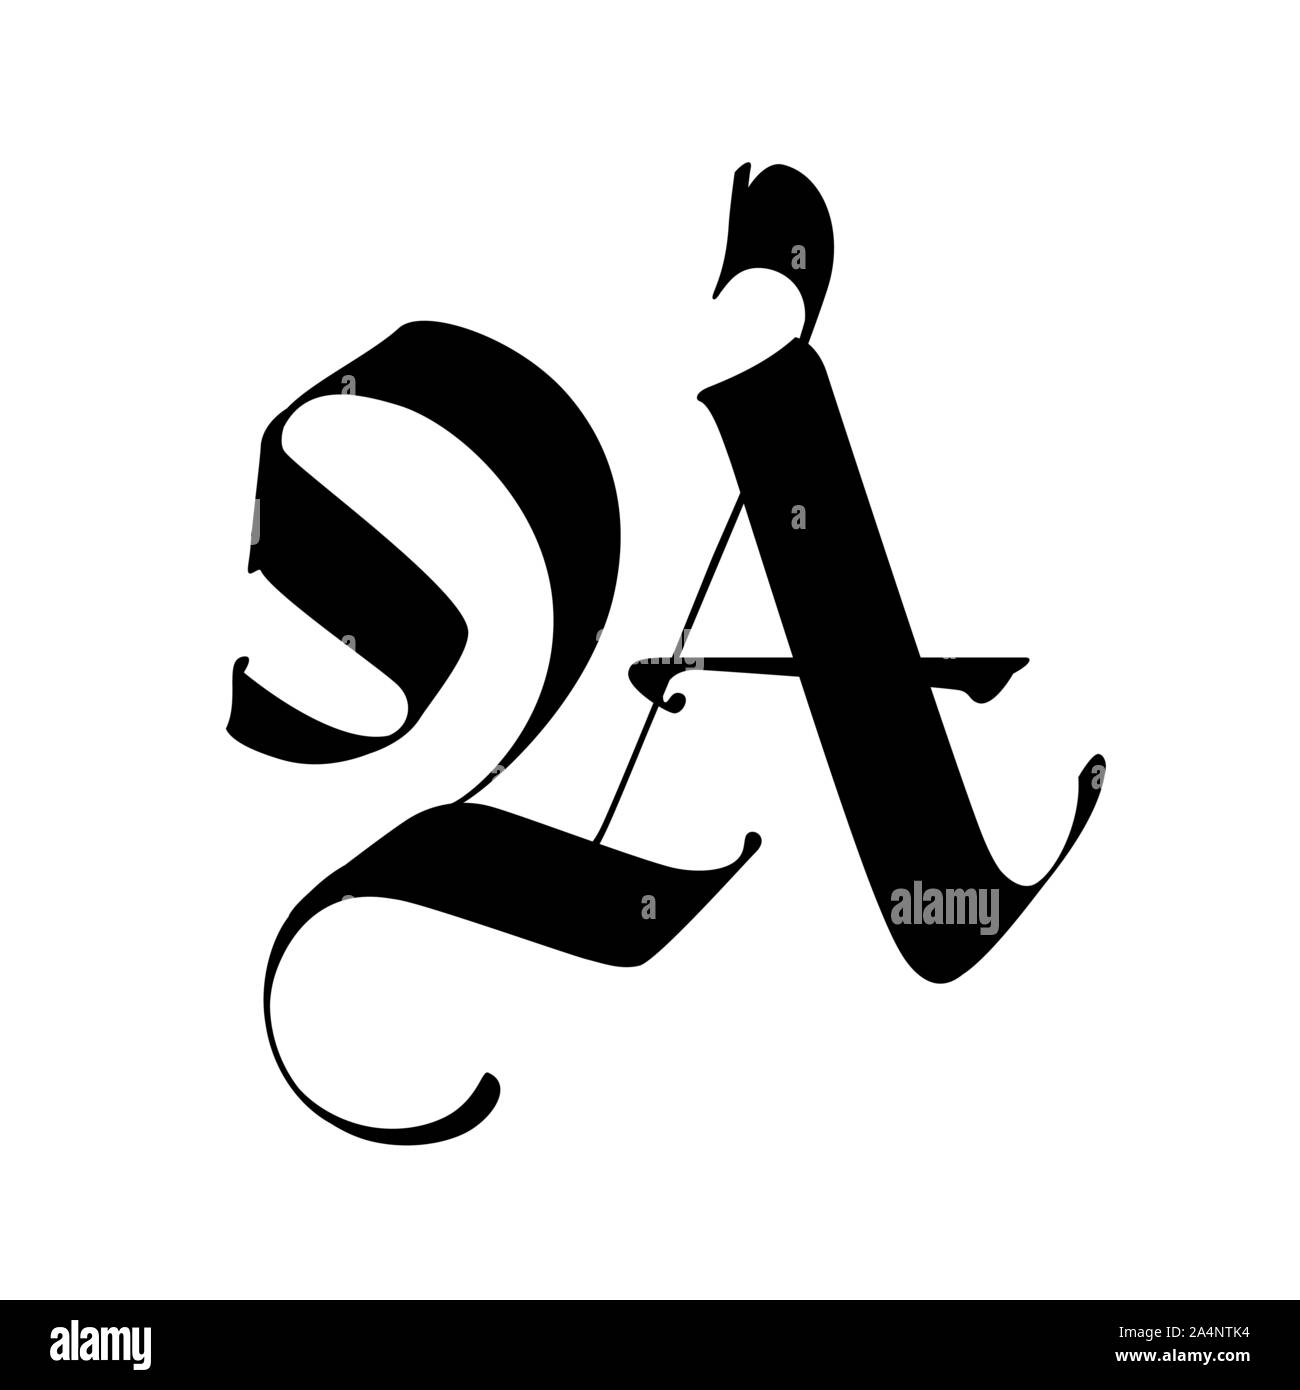 Lettre A, dans le style gothique. Vecteur. L'alphabet. Le symbole est isolé sur un fond blanc. De la calligraphie et de lettrage. Lettre en latin médiéval. Logo Illustration de Vecteur